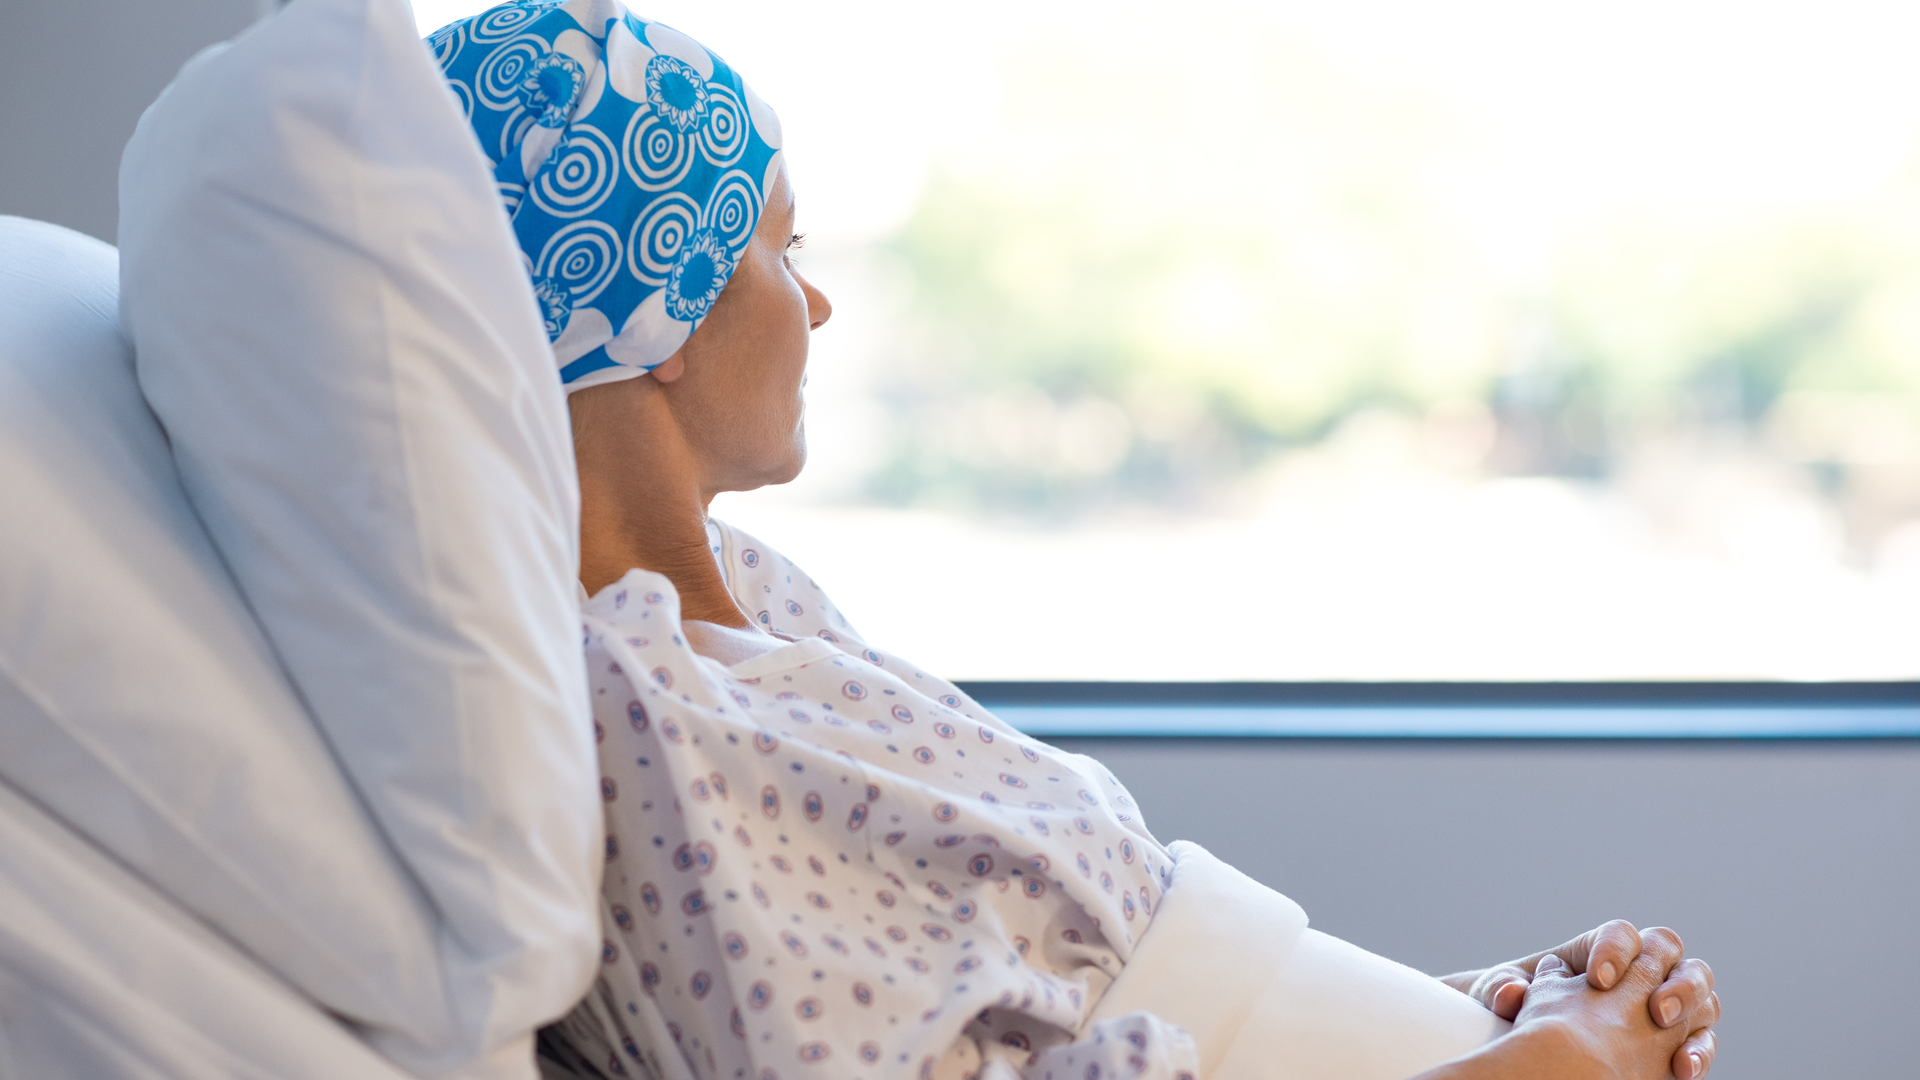 Ce complicatii sunt posibile in cancerul mamar avansat